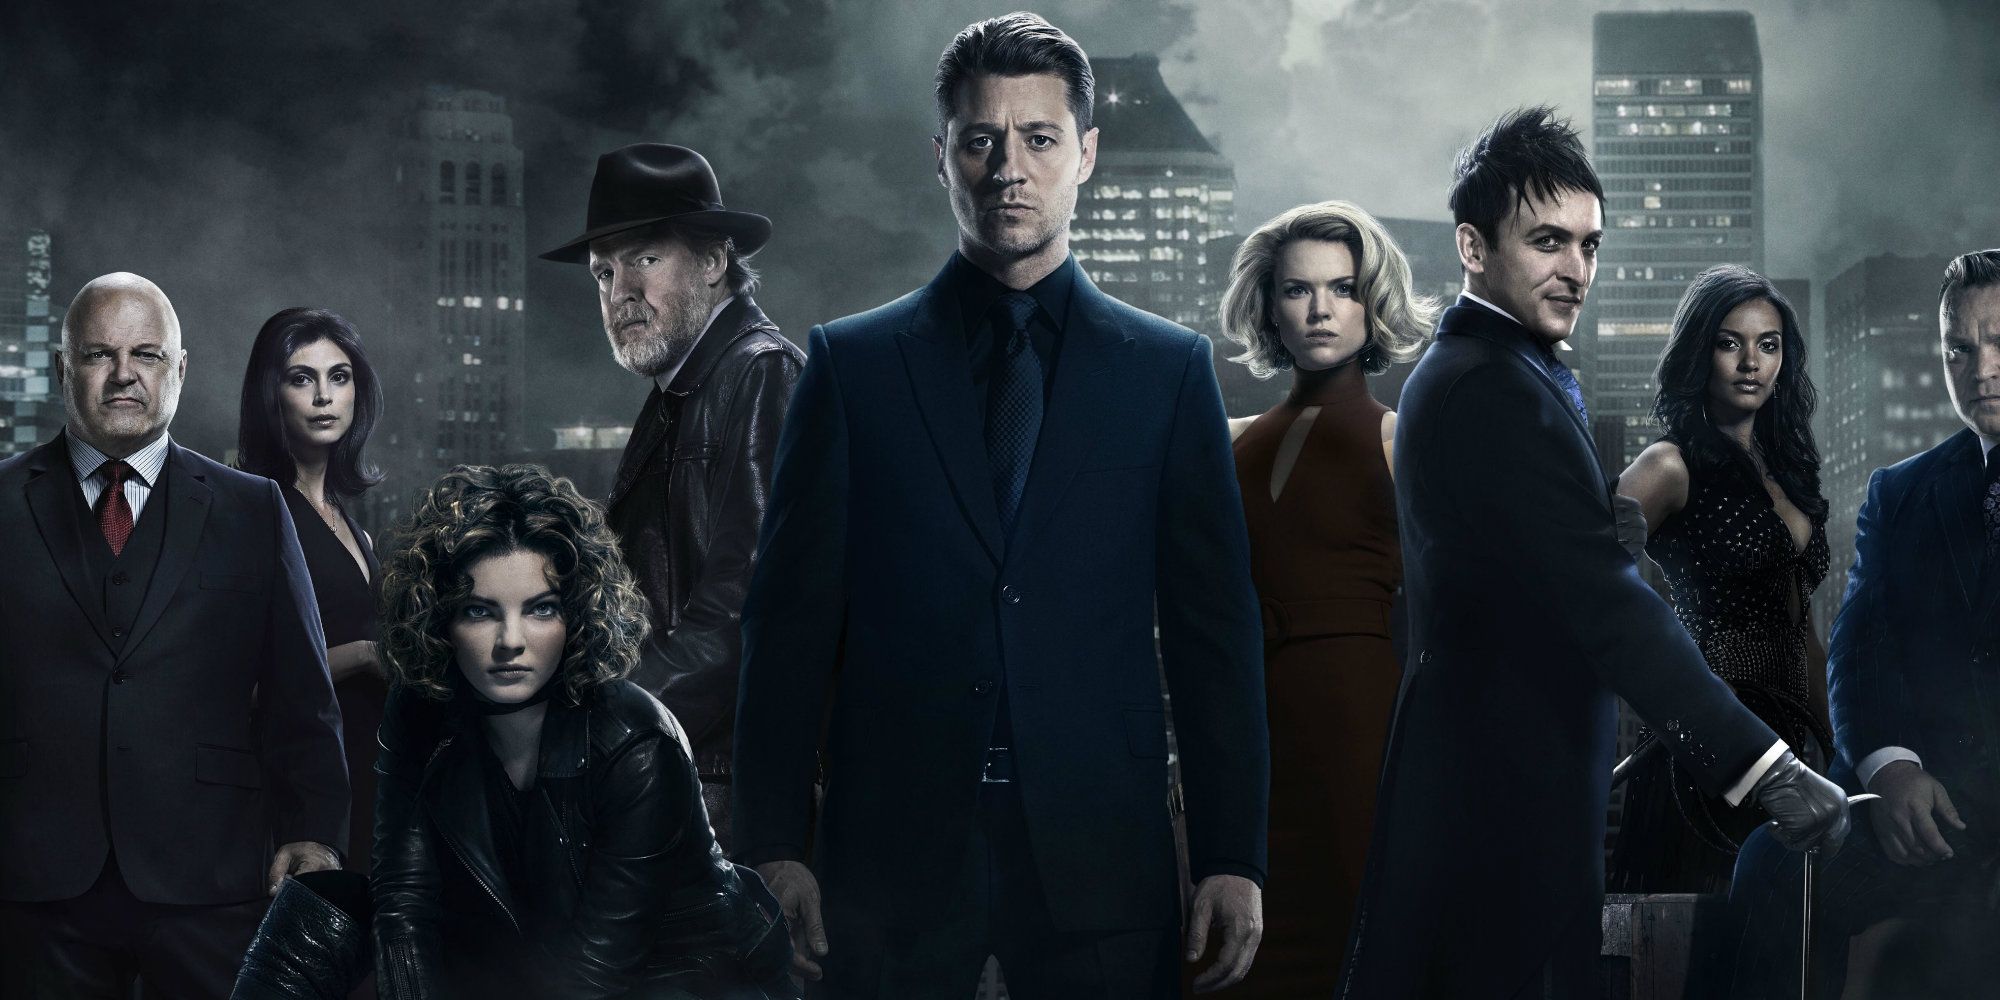 Gotham TV Show Cast